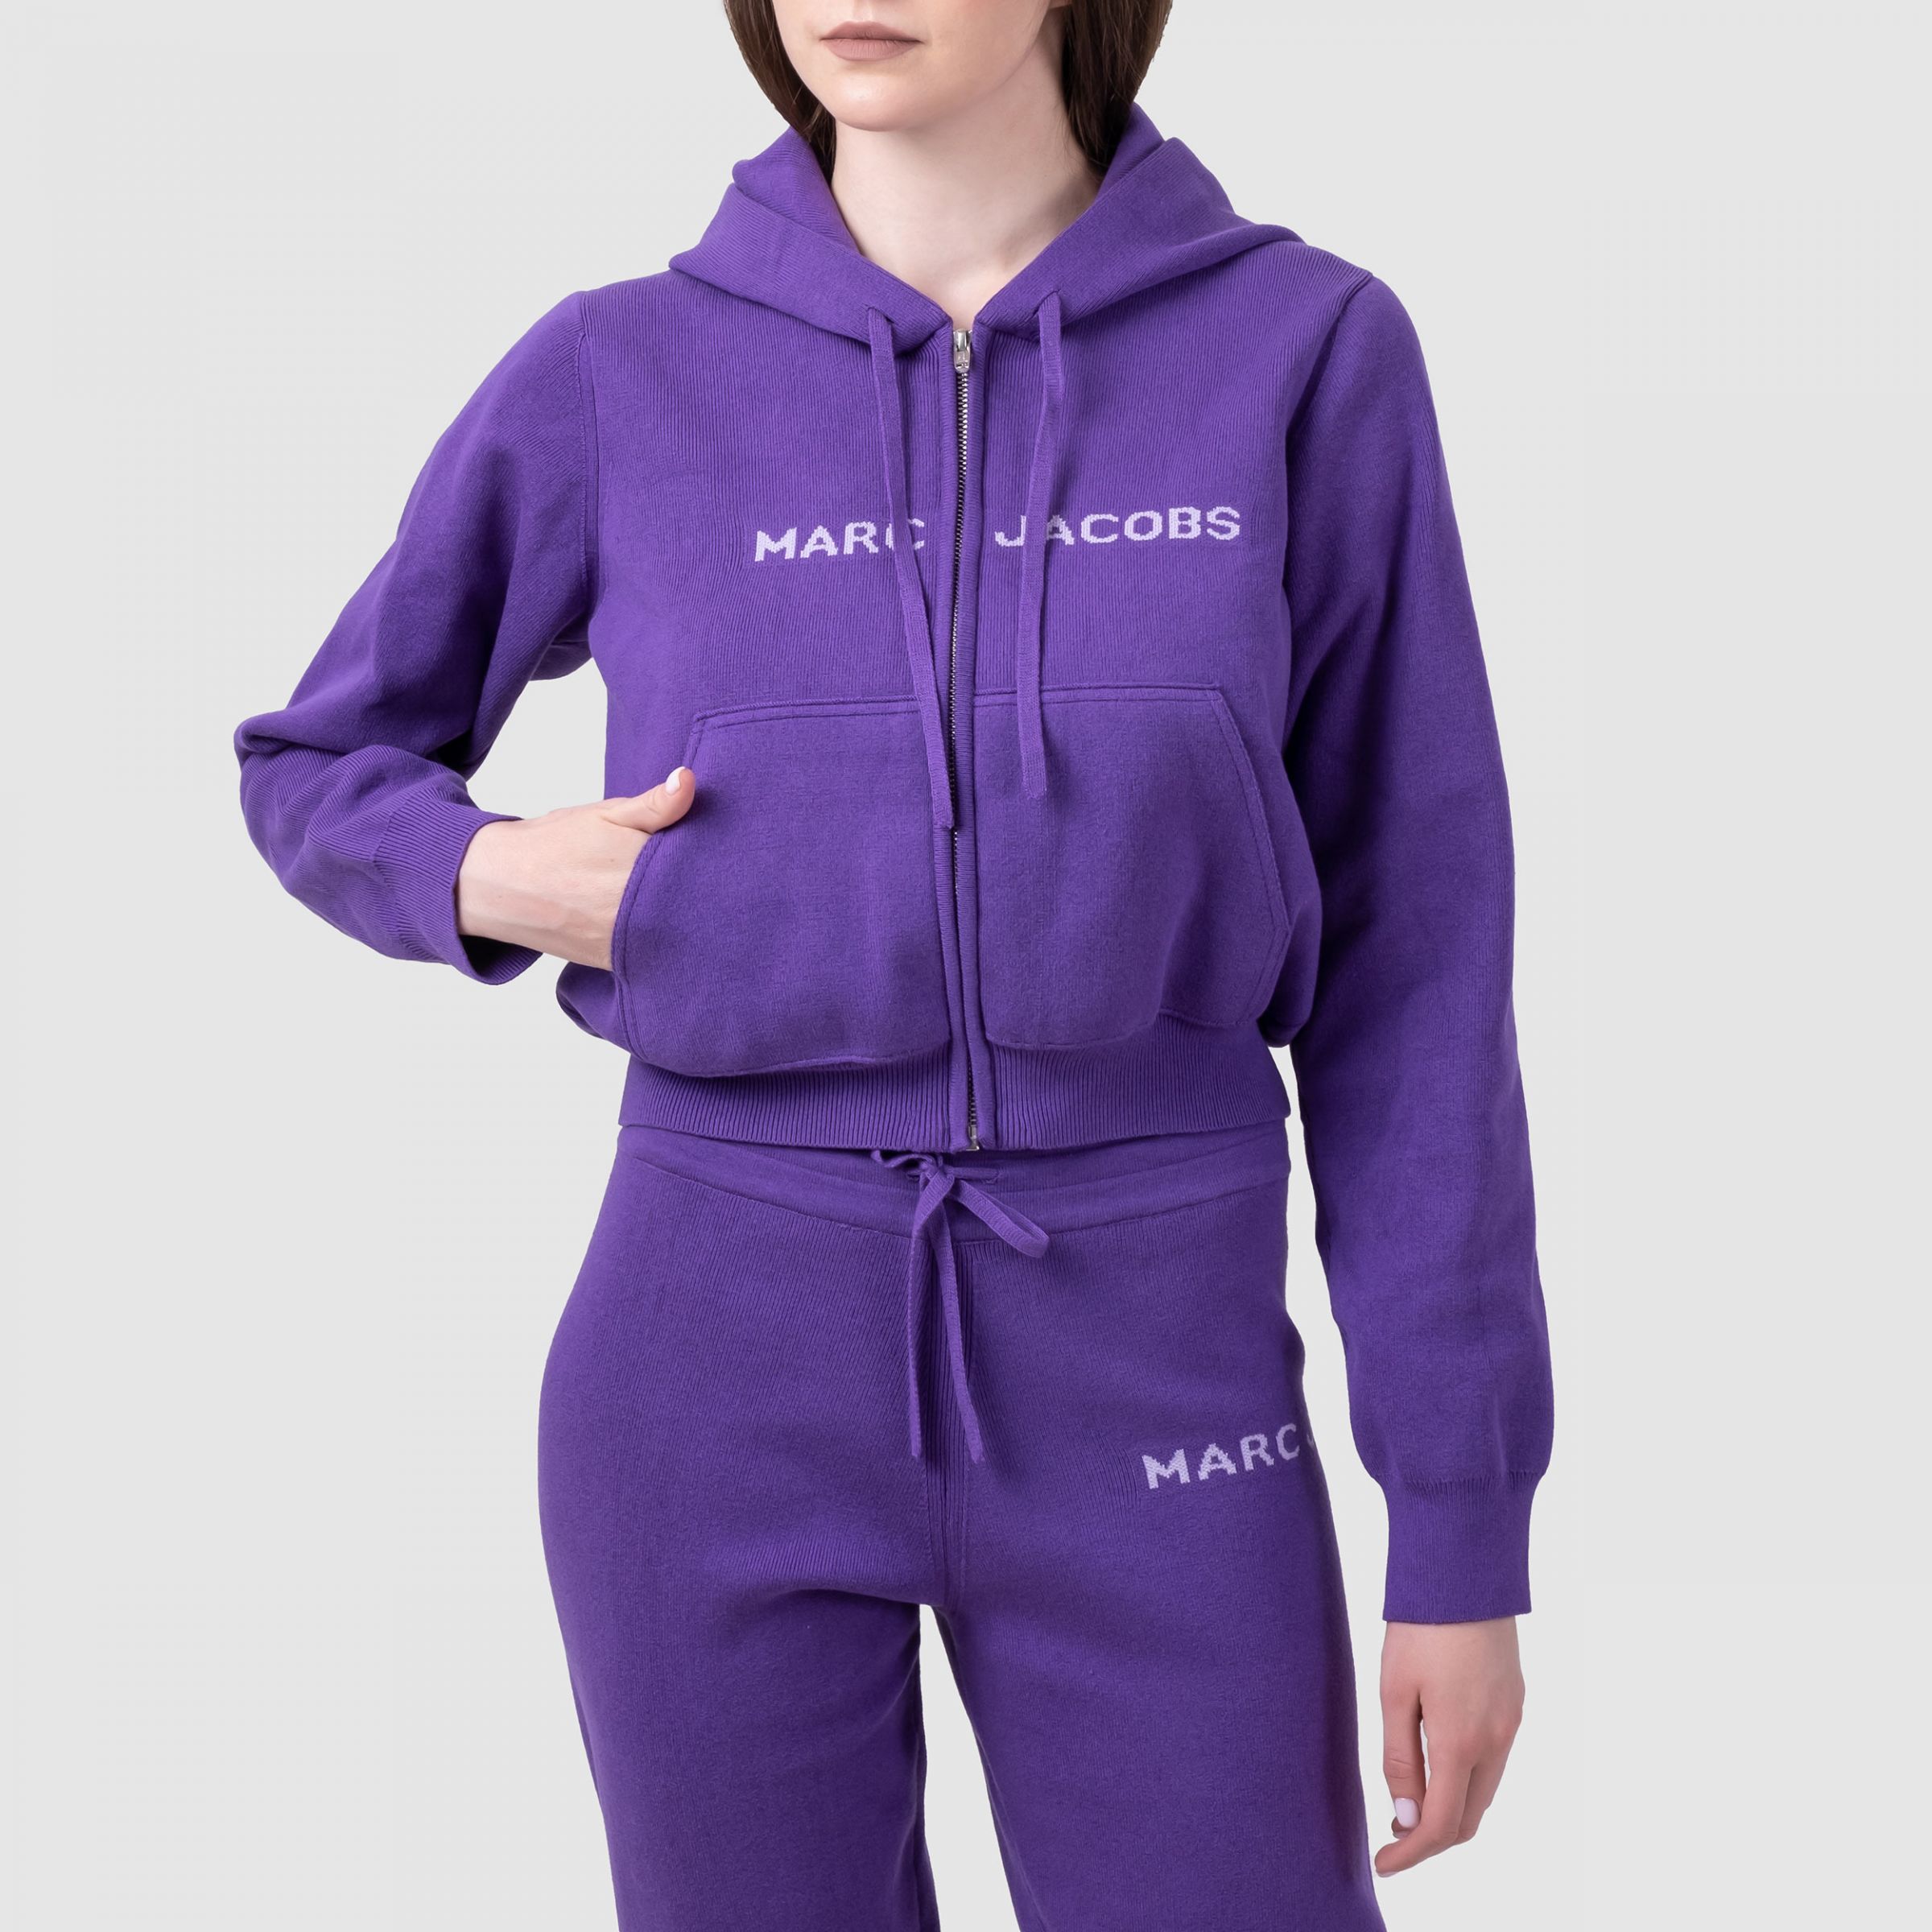 Спортивные брюки Marc Jacobs фиолетовые